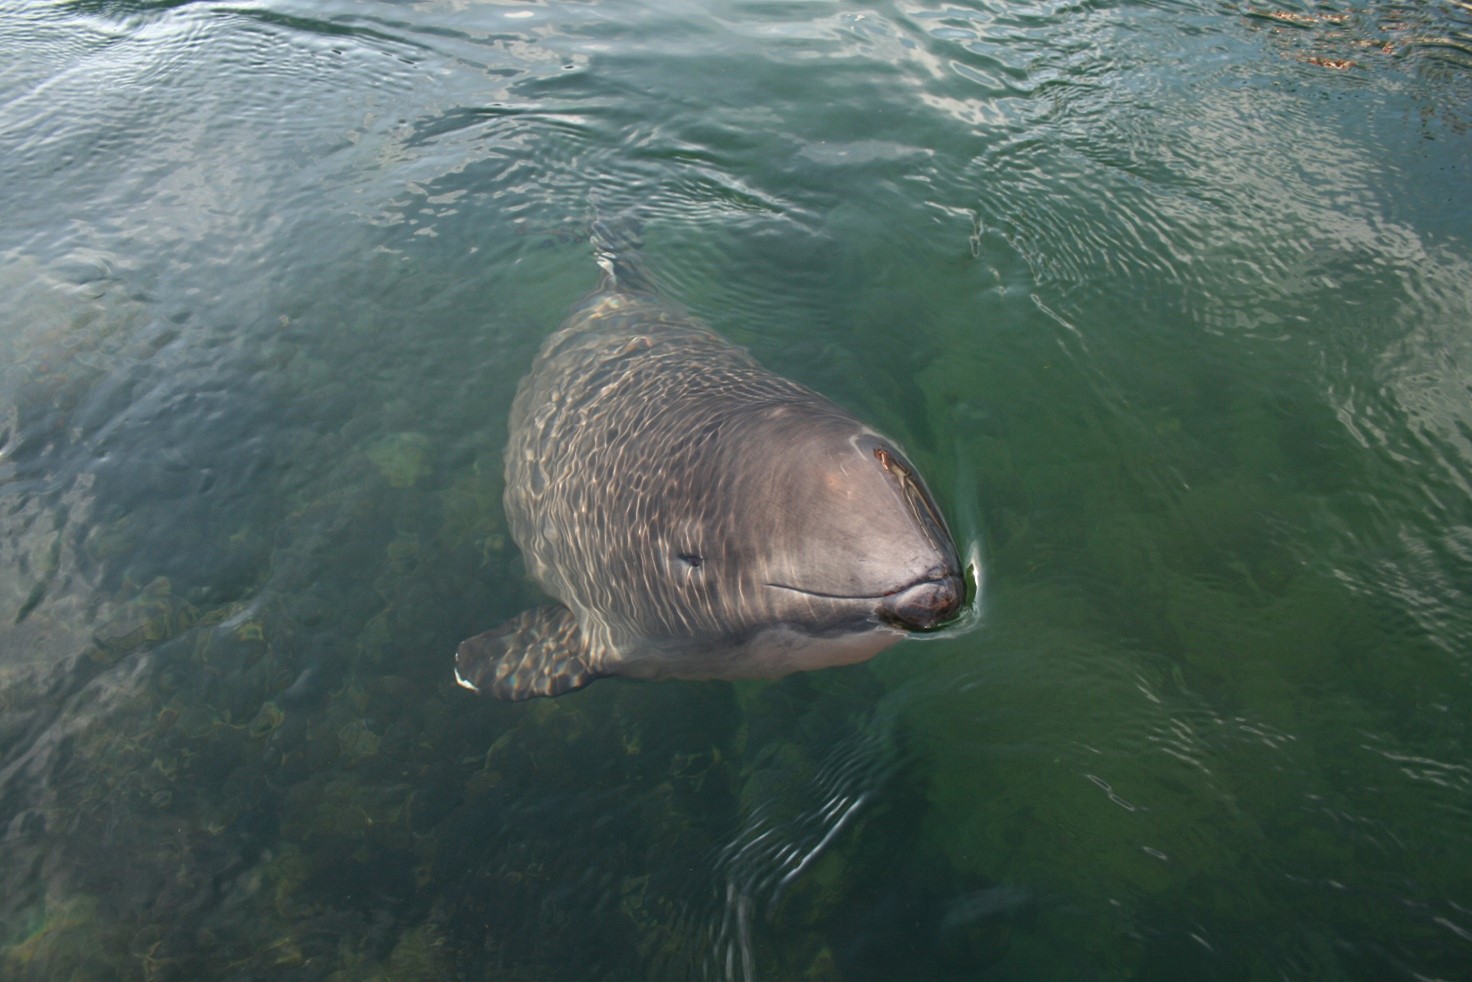 Godt nyt: Truet marsvin bliver bedre beskyttet i Østersøen